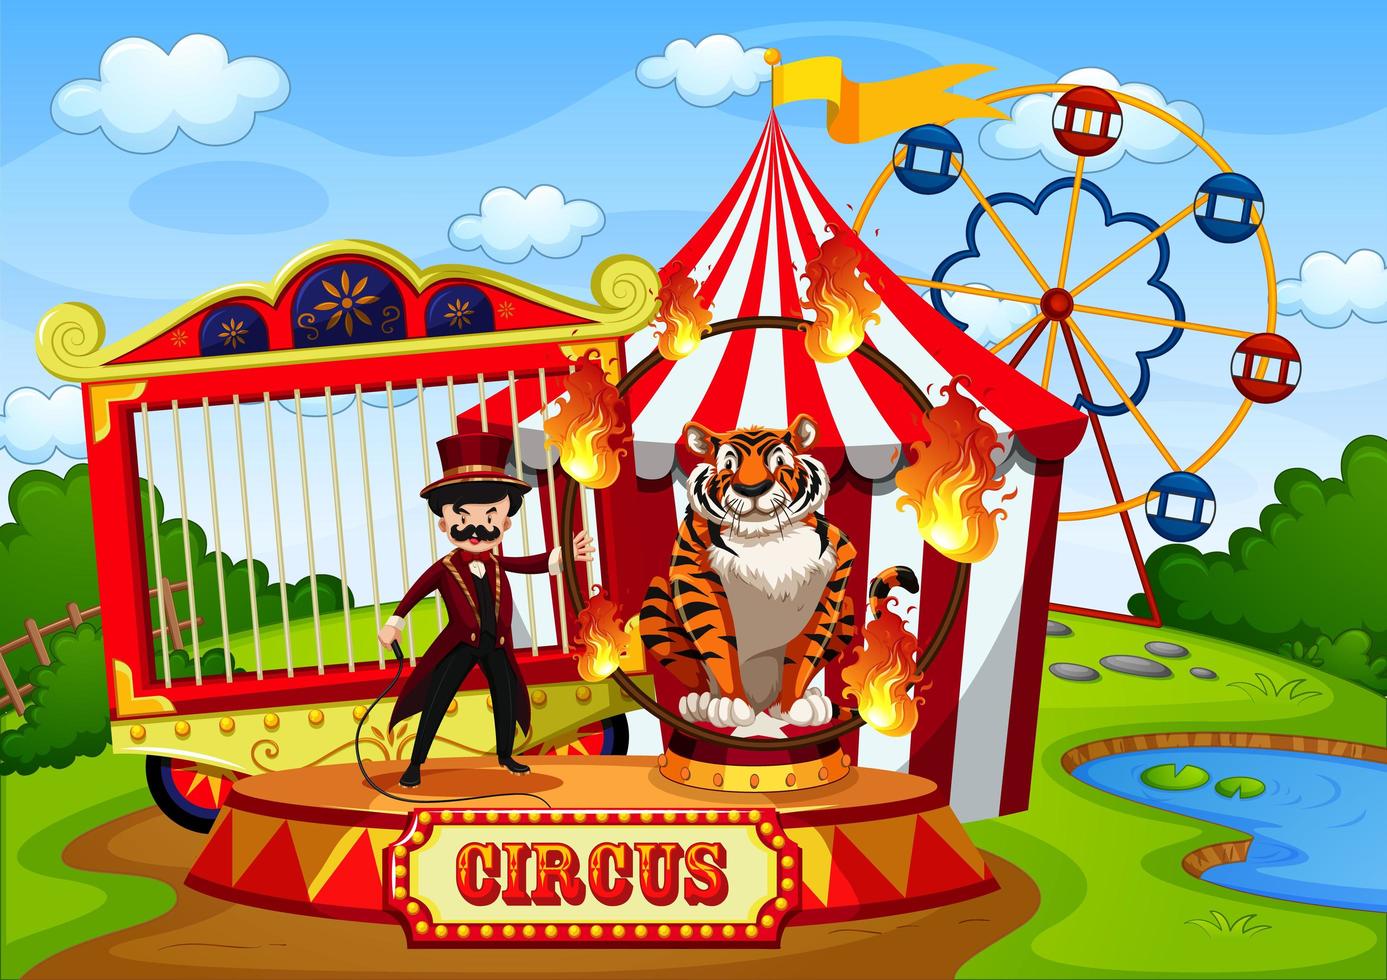 pretpark met circus in cartoon-stijl vector